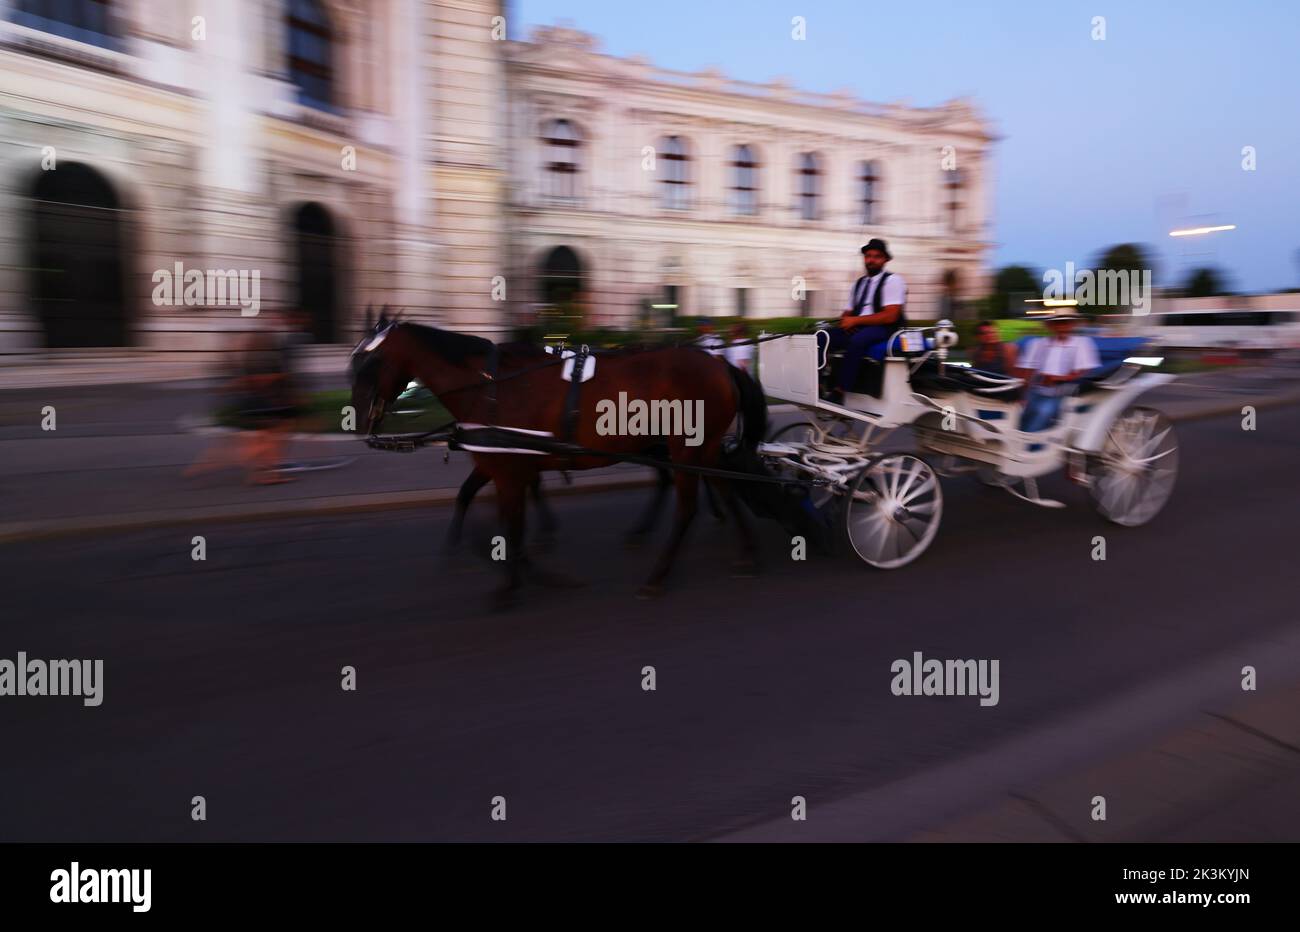 Wien Fiaker, Kutsche, Fiaker, Wien, Pferdekutsche oder Fiaker bei romantischer Fahrt durch die Hauptstadt, Vienna, Austria! Foto Stock